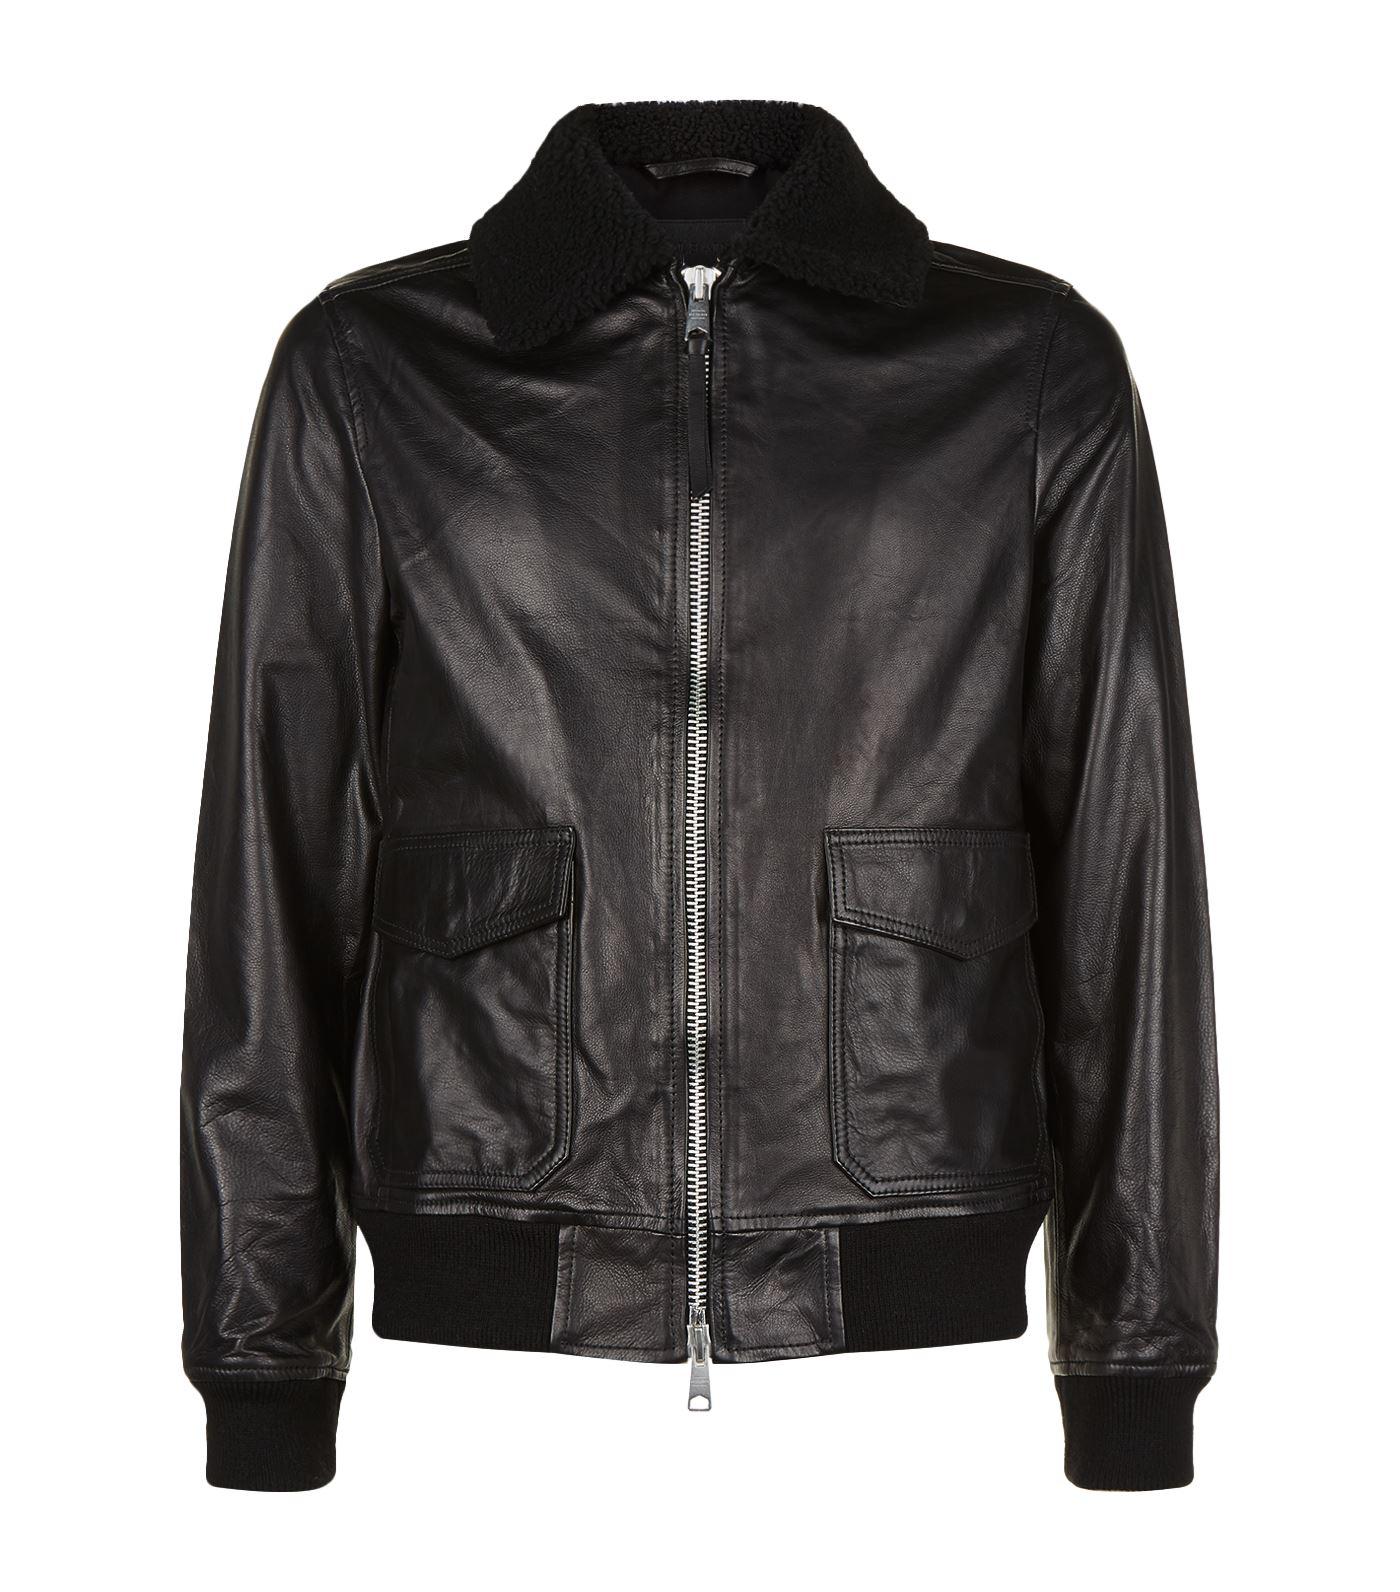 AllSaints Leather Oban Aviator Jacket in Black for Men - Lyst